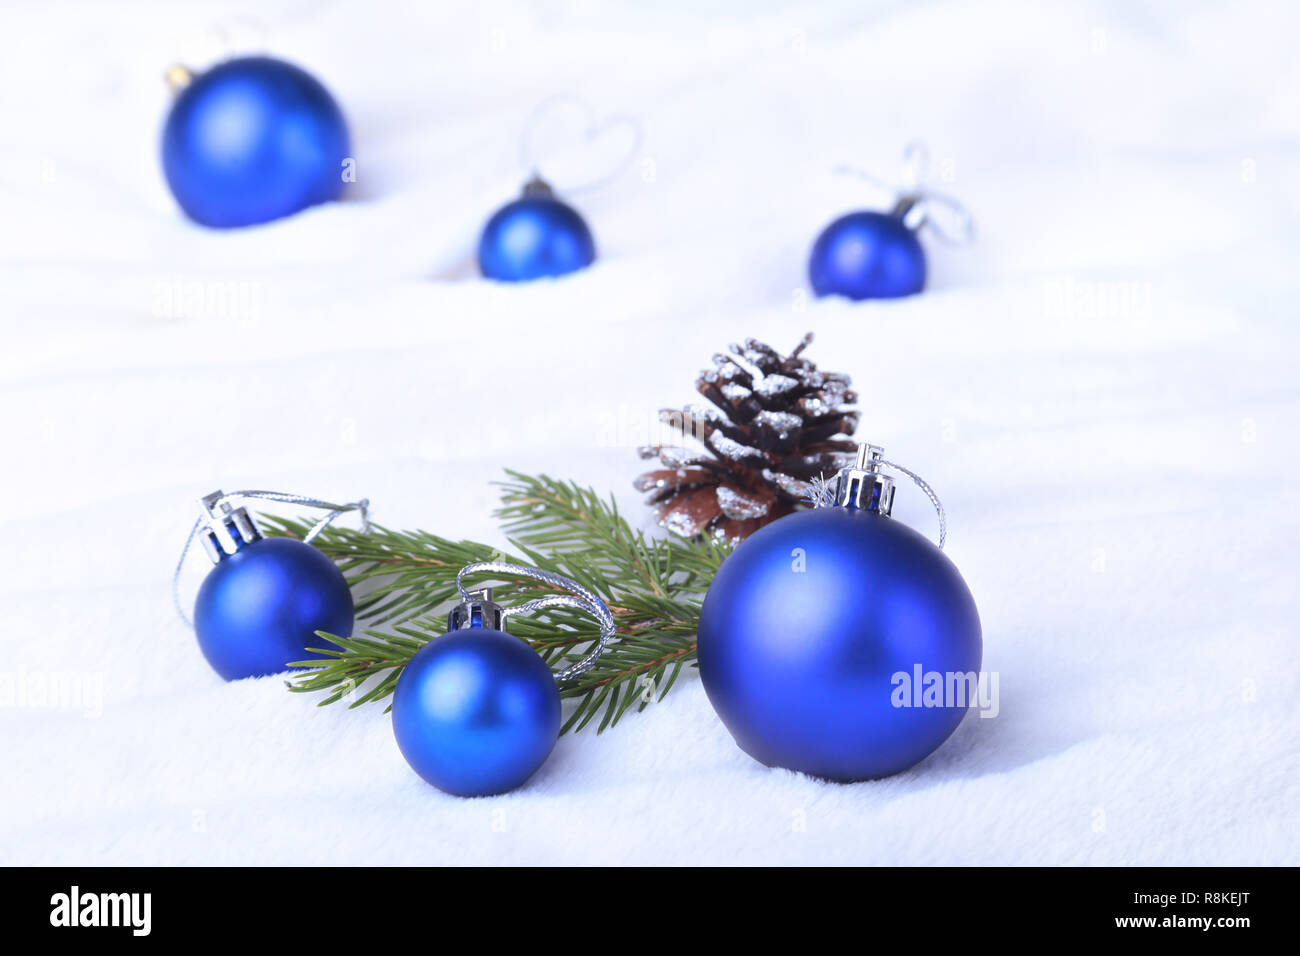 Weihnachten oder Urlaub Zusammensetzung mit blauen Kugeln auf bauschige Federn mit Schnee und Schneeflocken. Stockfoto